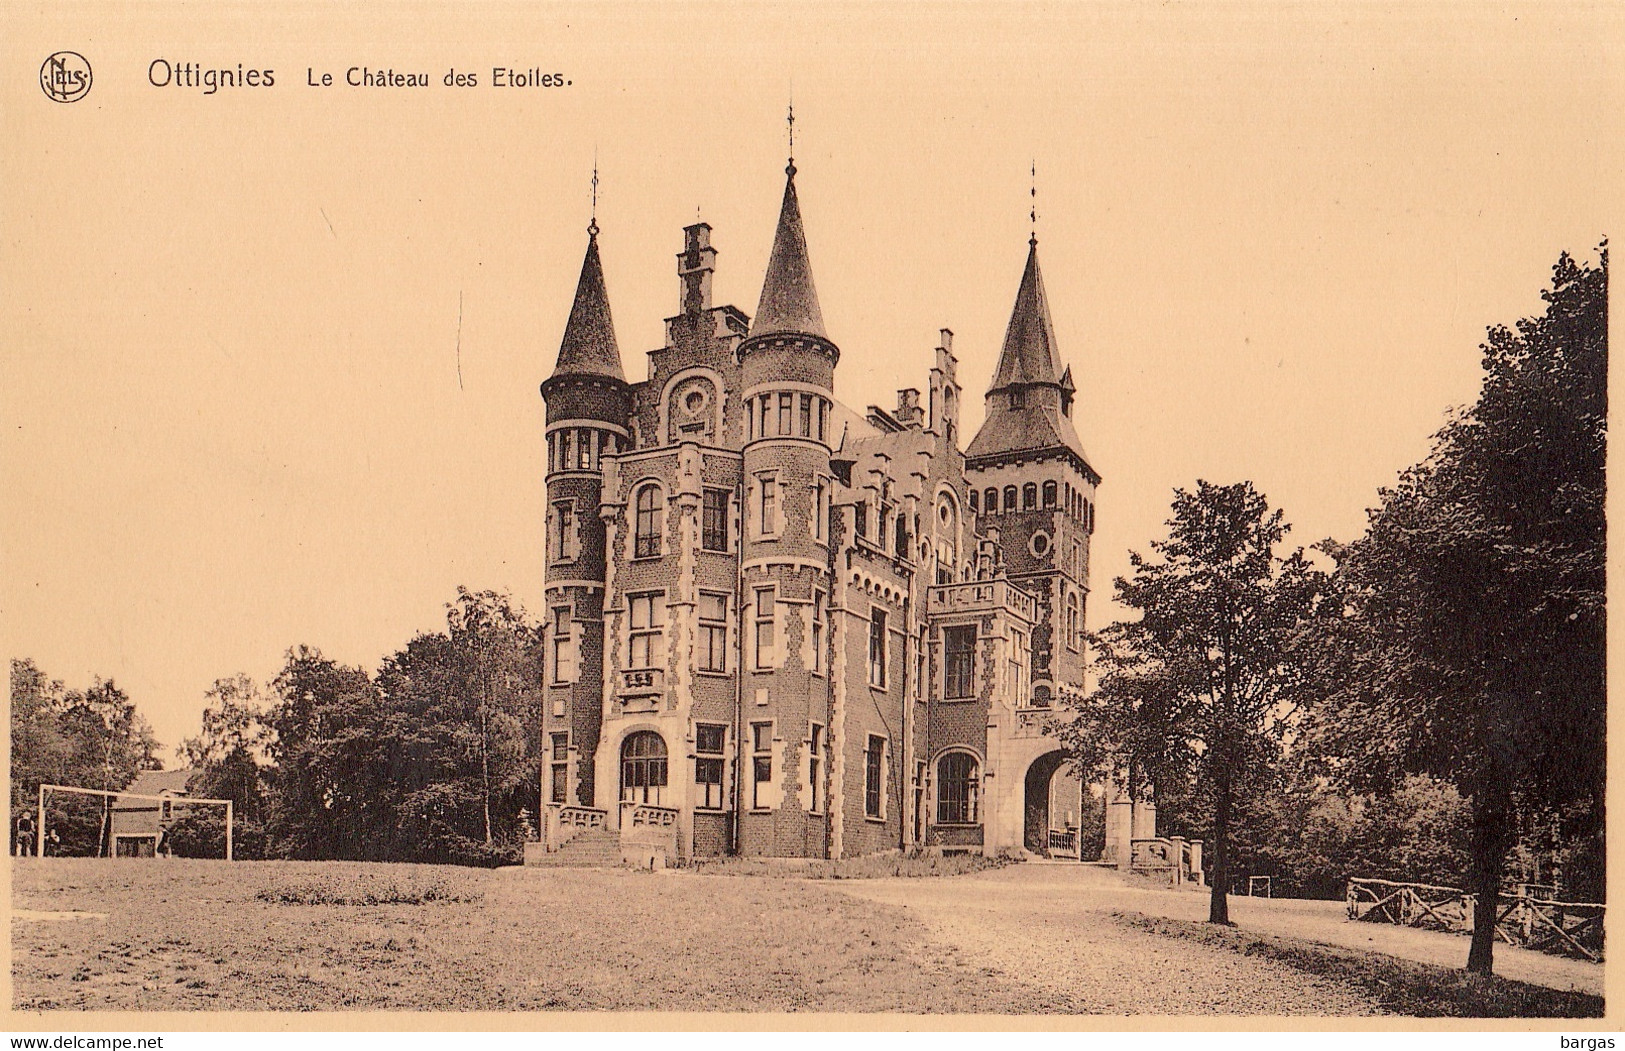 Carte Postale Ottignies Le Château Des étoiles - Ottignies-Louvain-la-Neuve